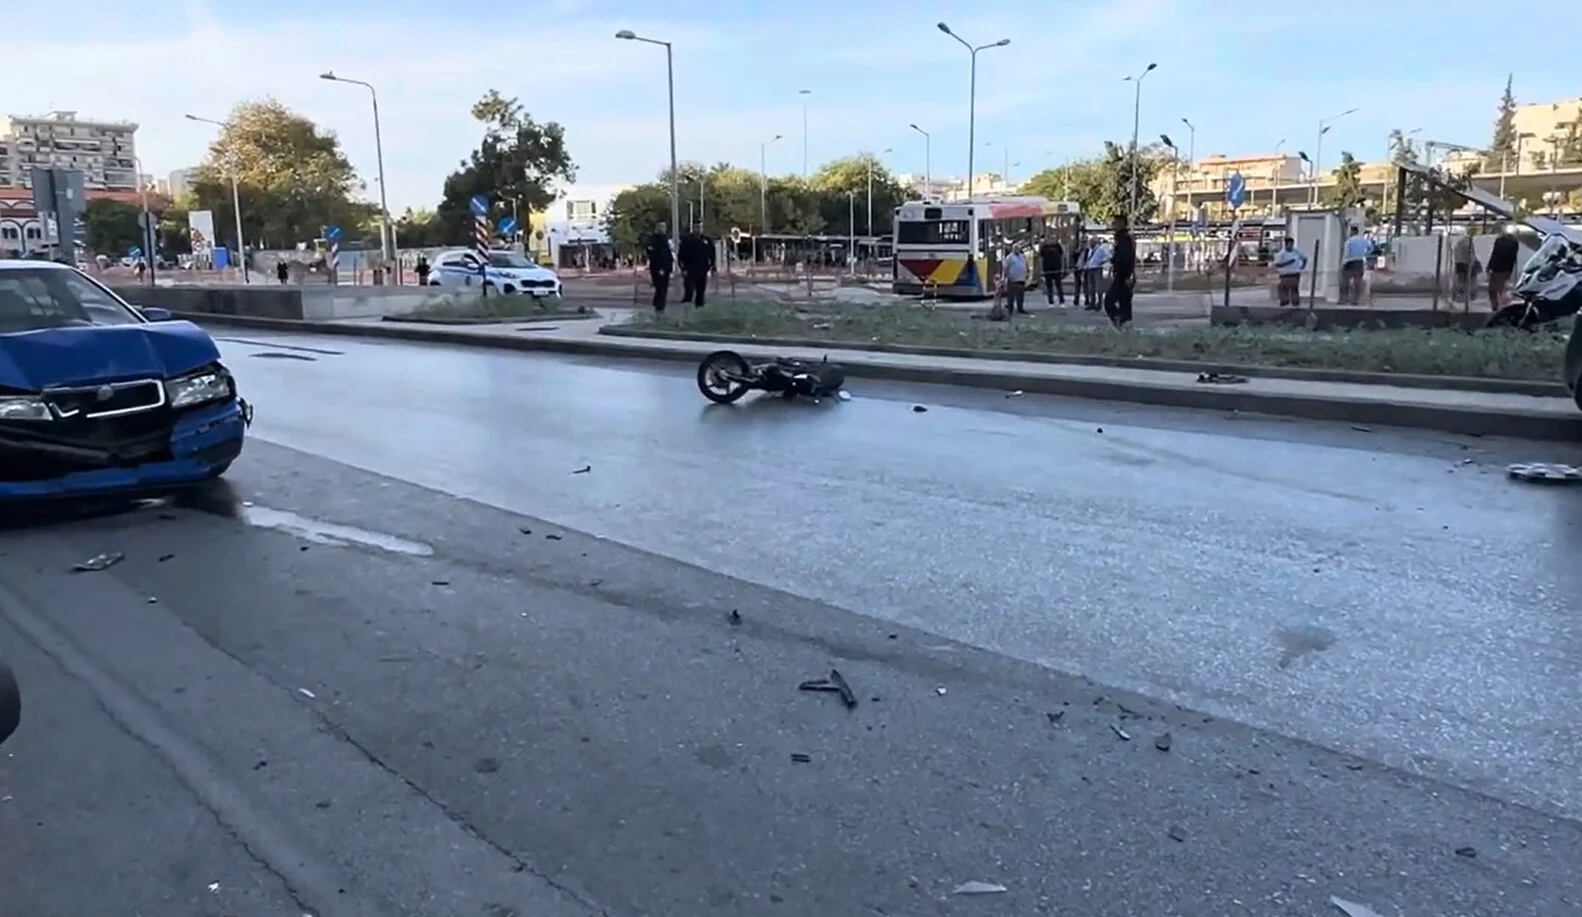 Θεσσαλονικη: Ο οδηγός του λεωφορείου δεν θυμάται τίποτα για το δυστύχημα – Έχει απώλεια συνείδησης